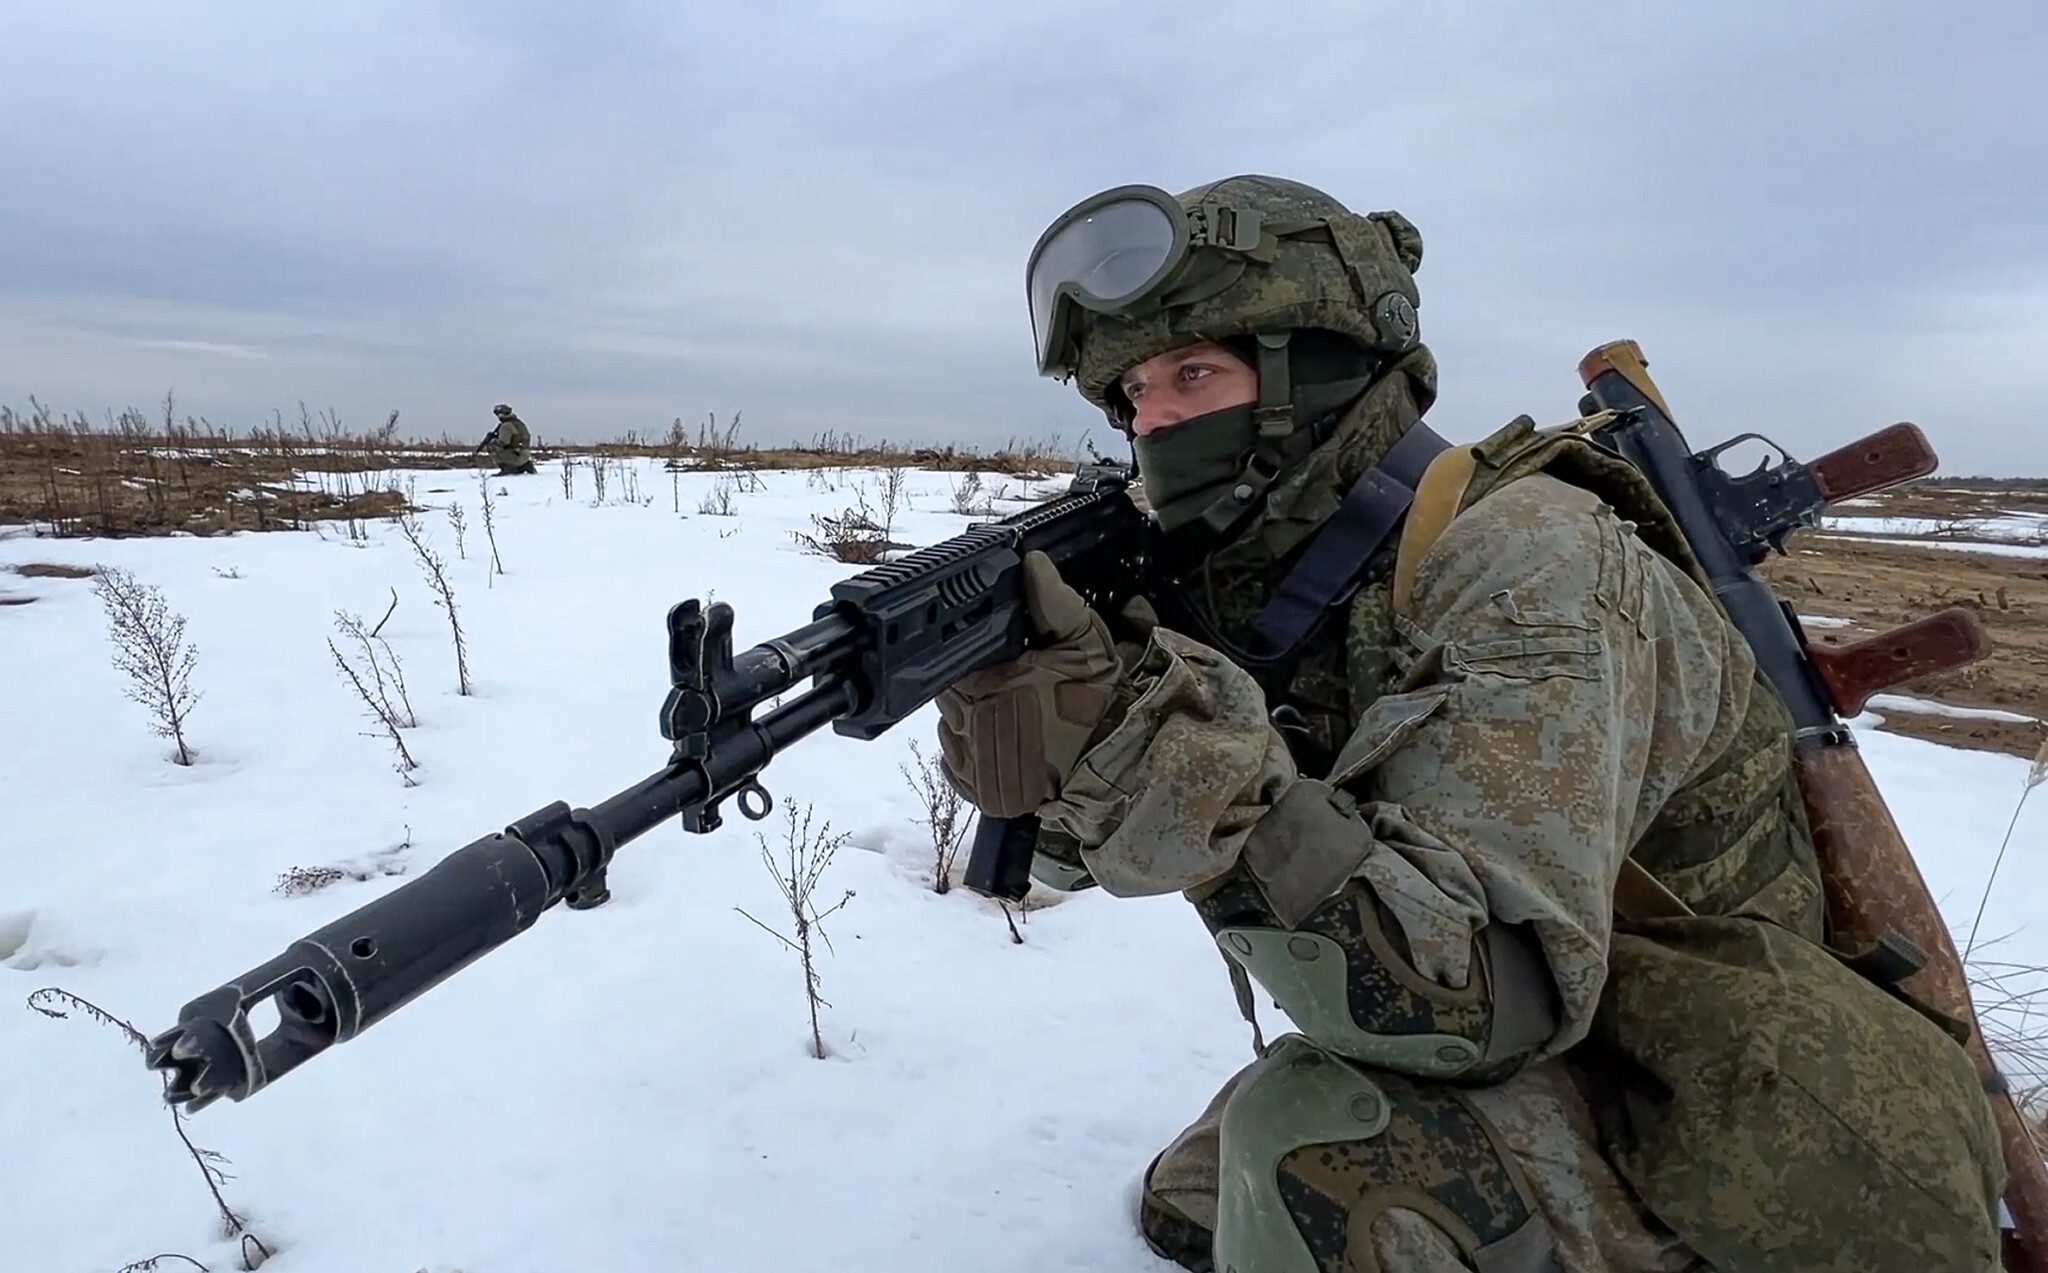 الدفاع الرّوسيّة: العمليّات في أوكرانيا استؤنفت